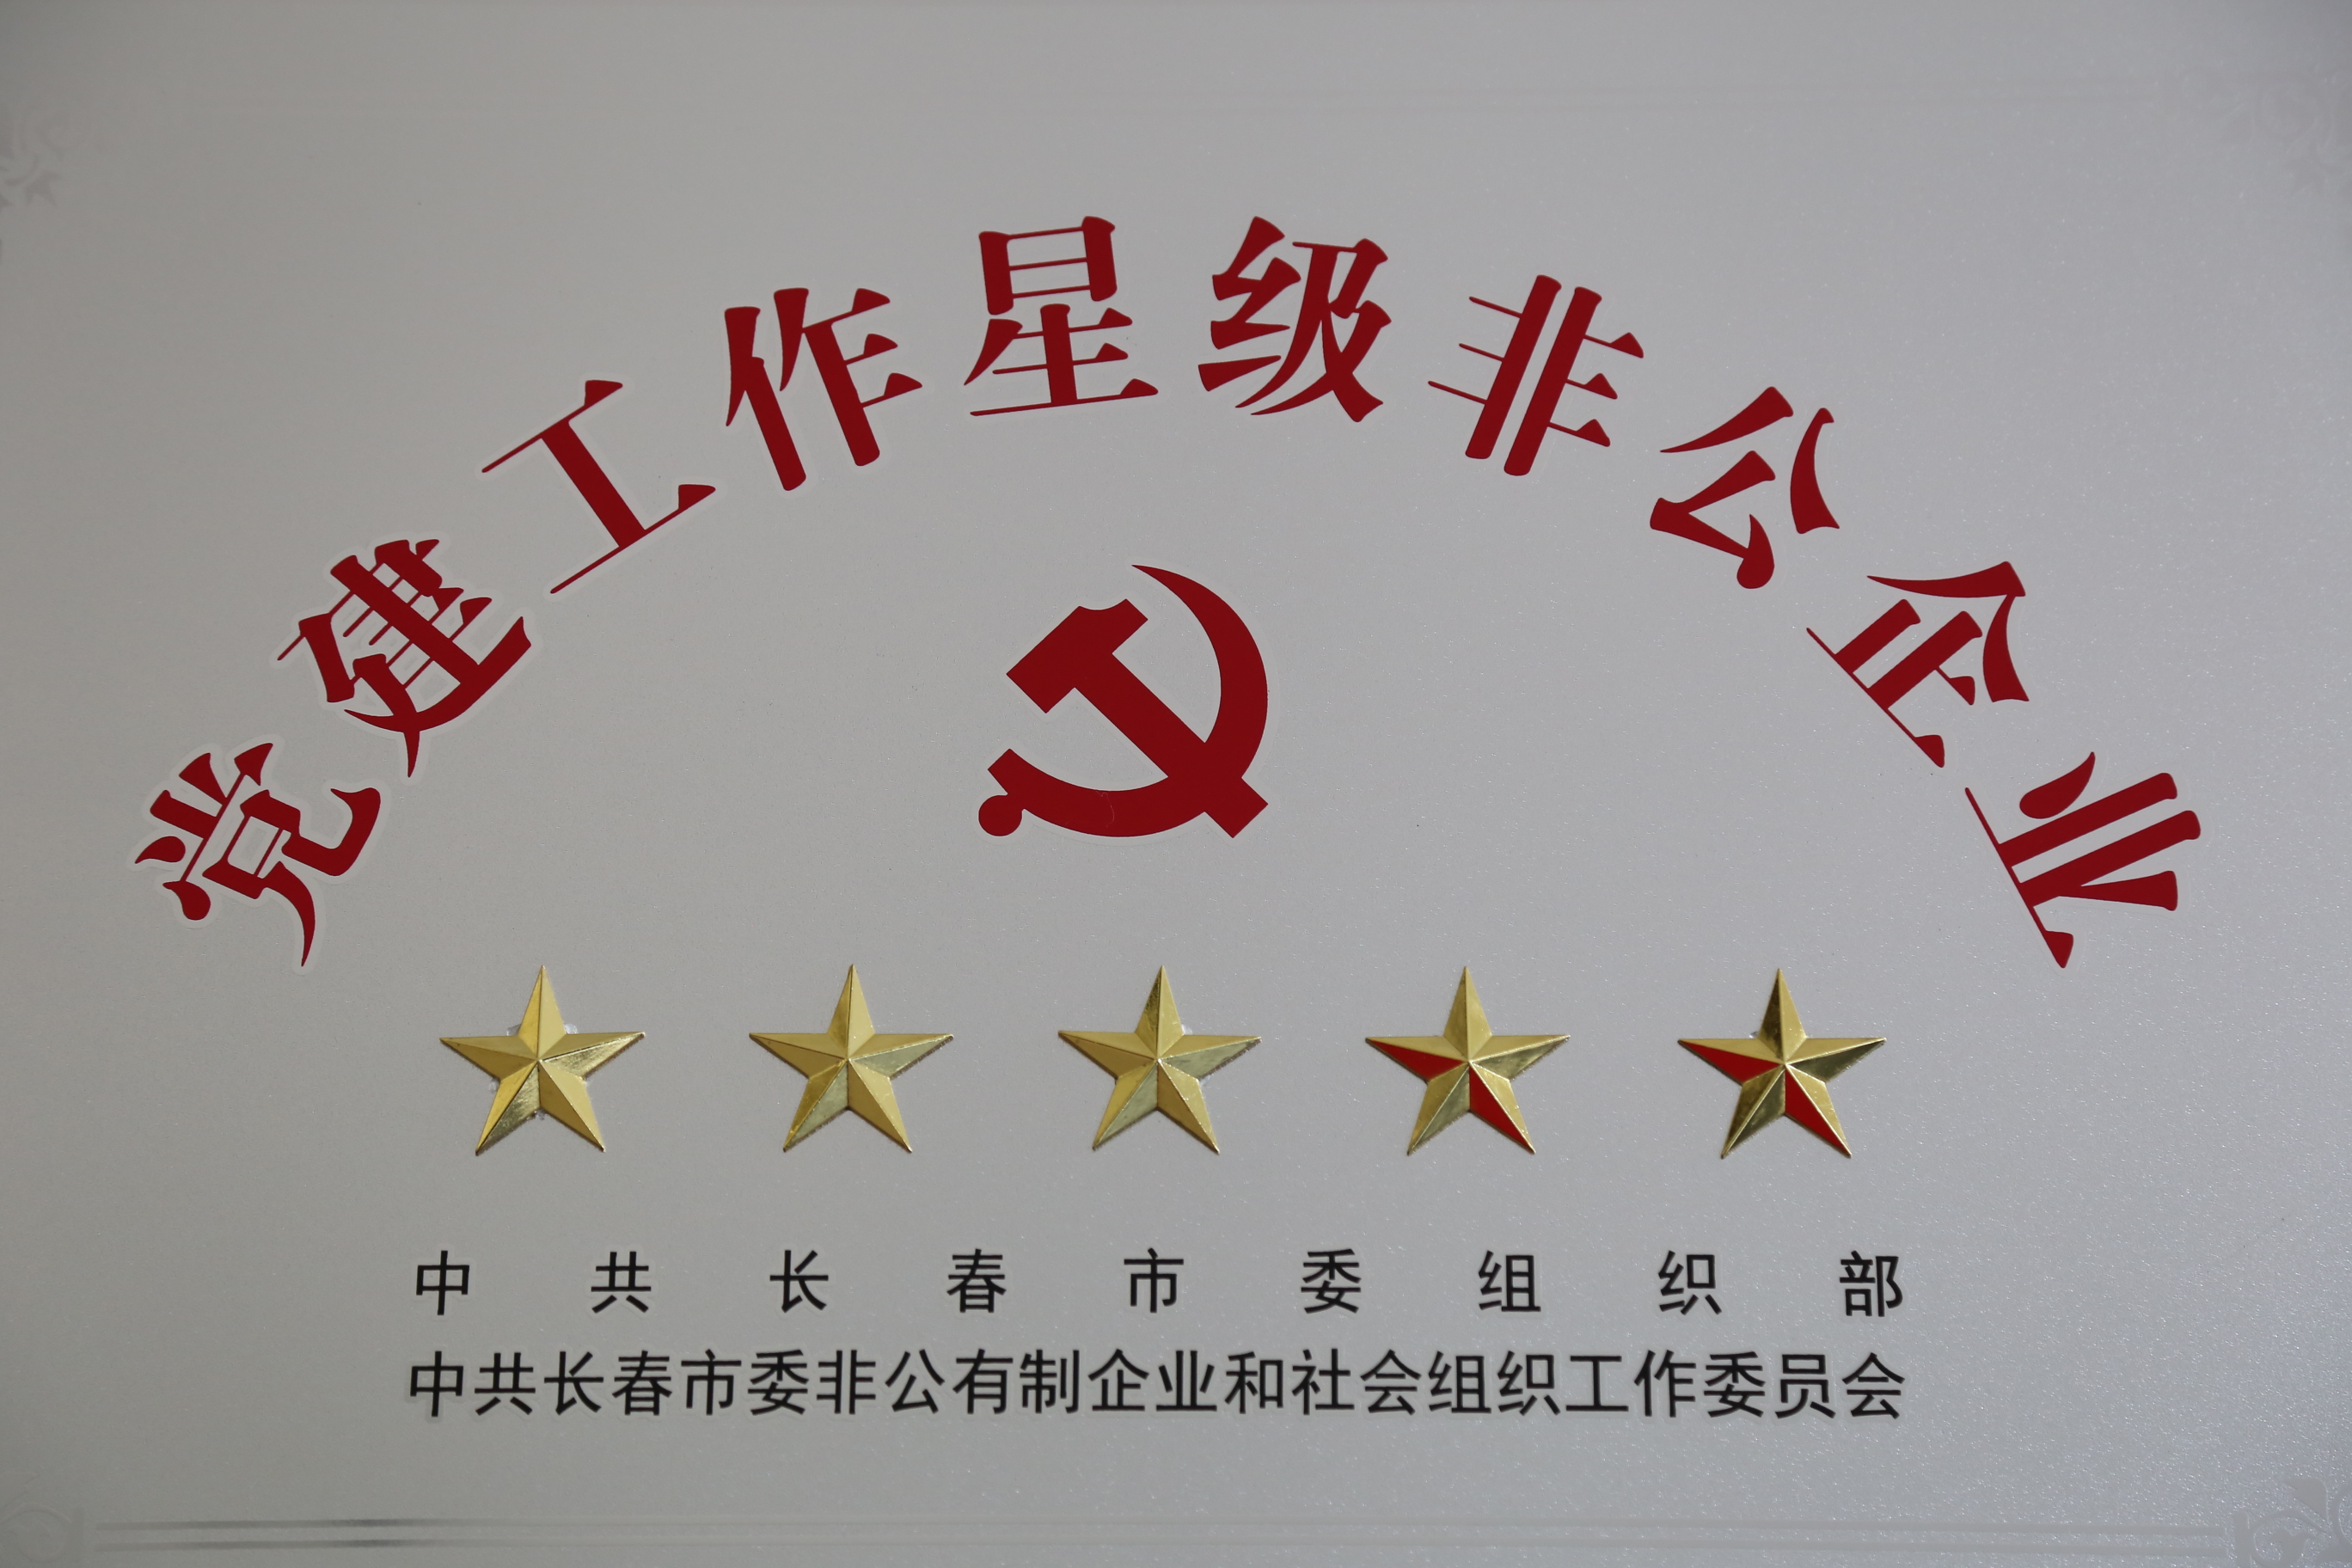 集团公司被长春市委组织部授予“党建工作五星级非公企业”称号